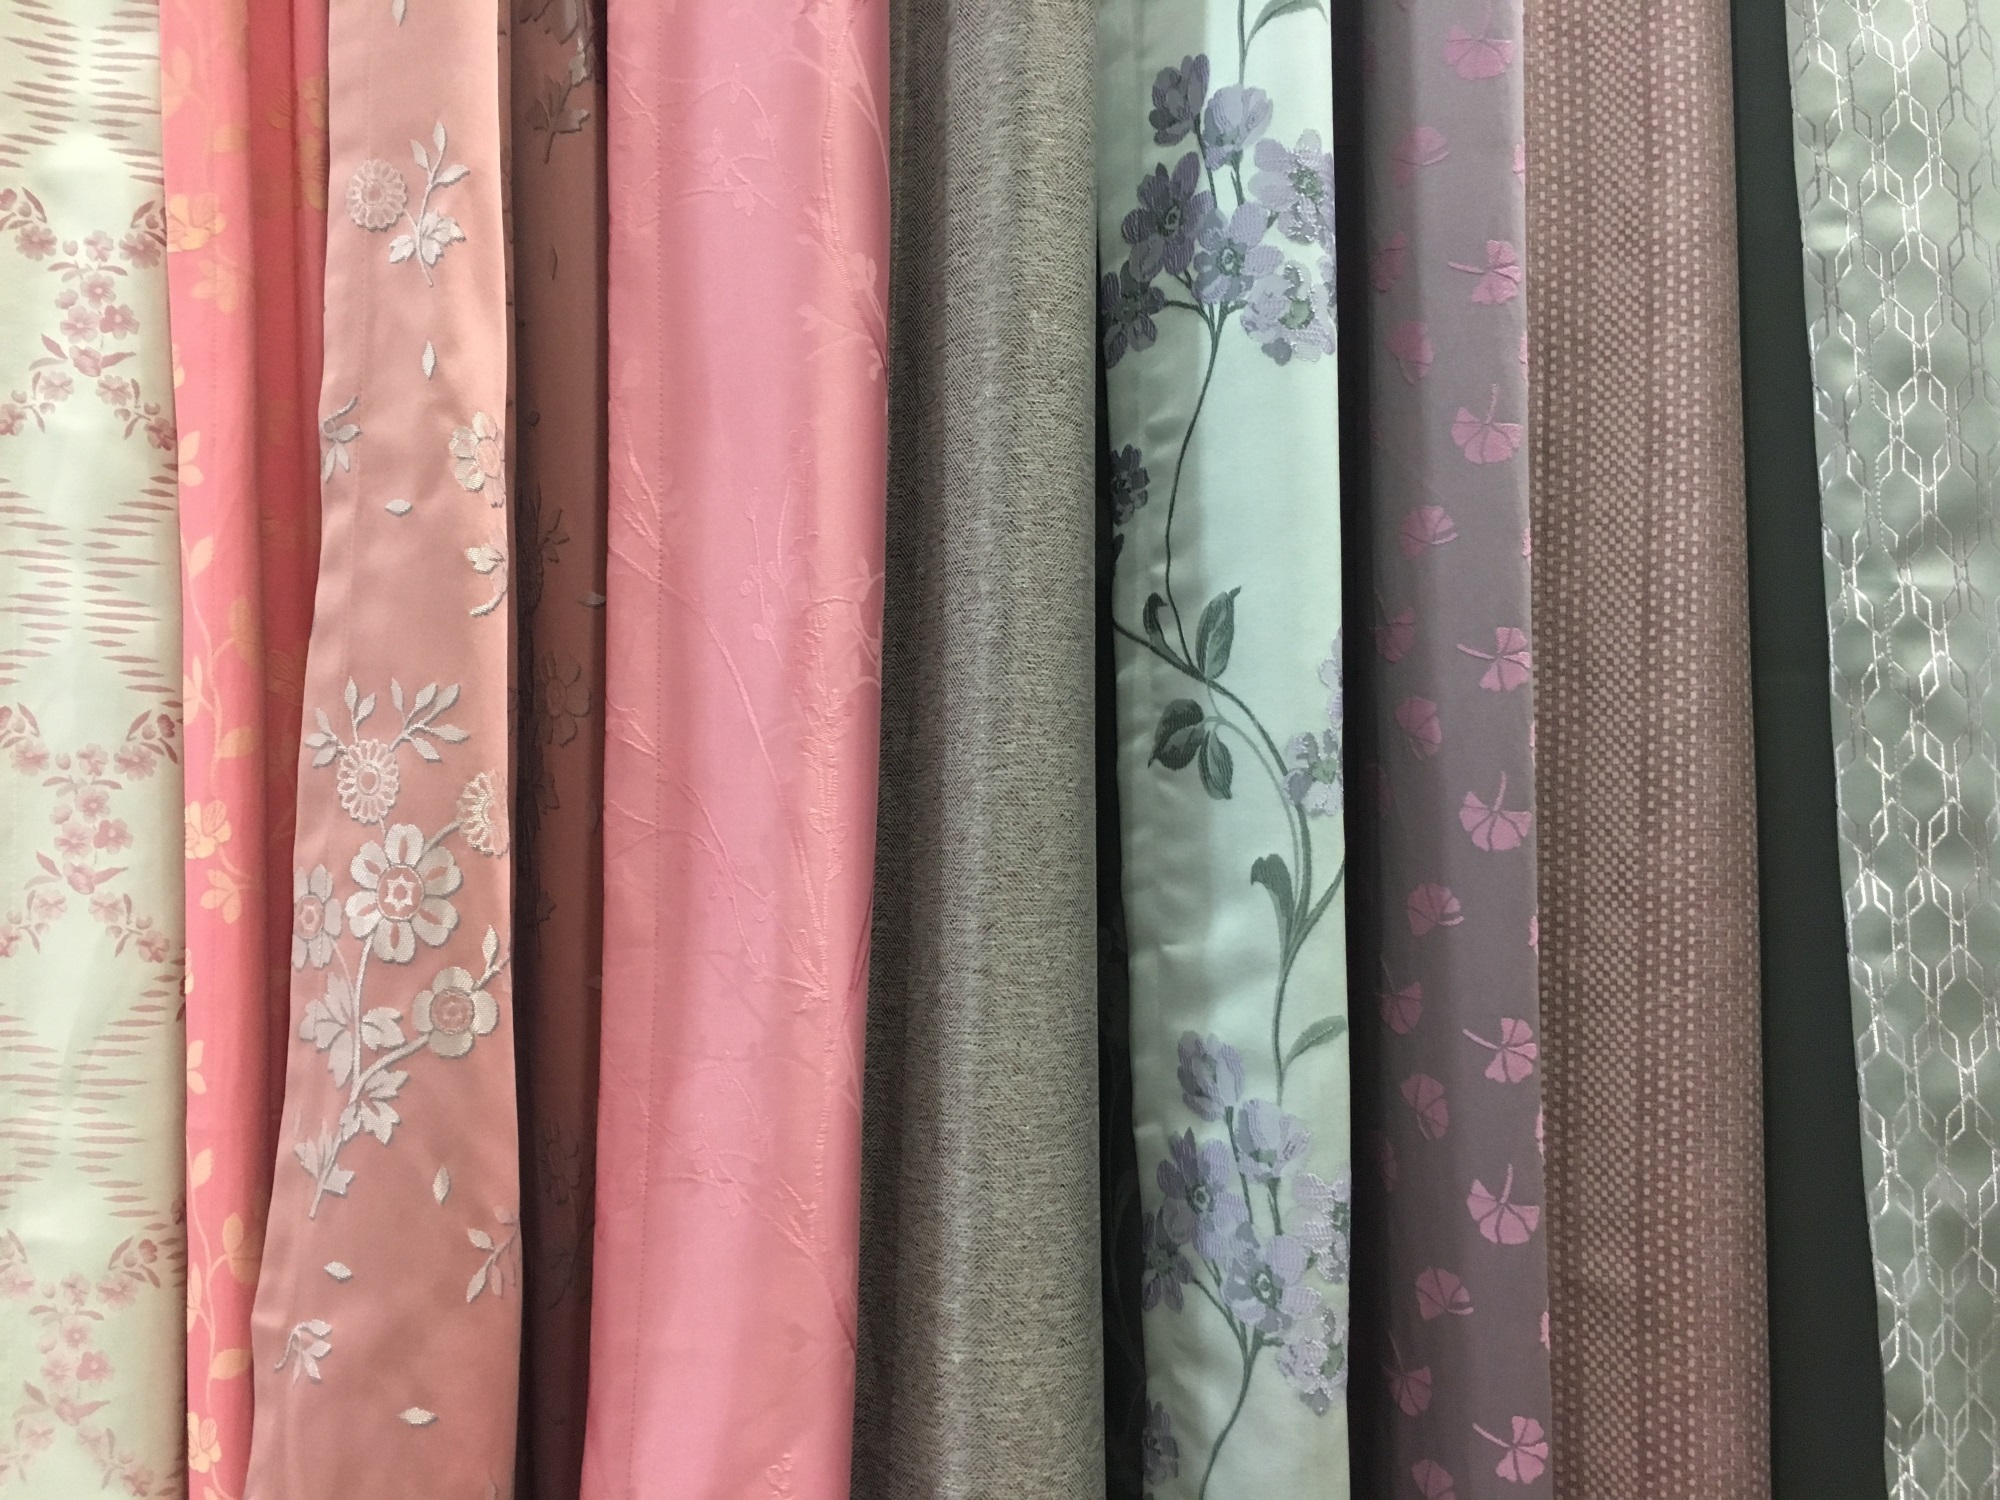 Choisir le bon tissu pour ses rideaux - Marie Claire